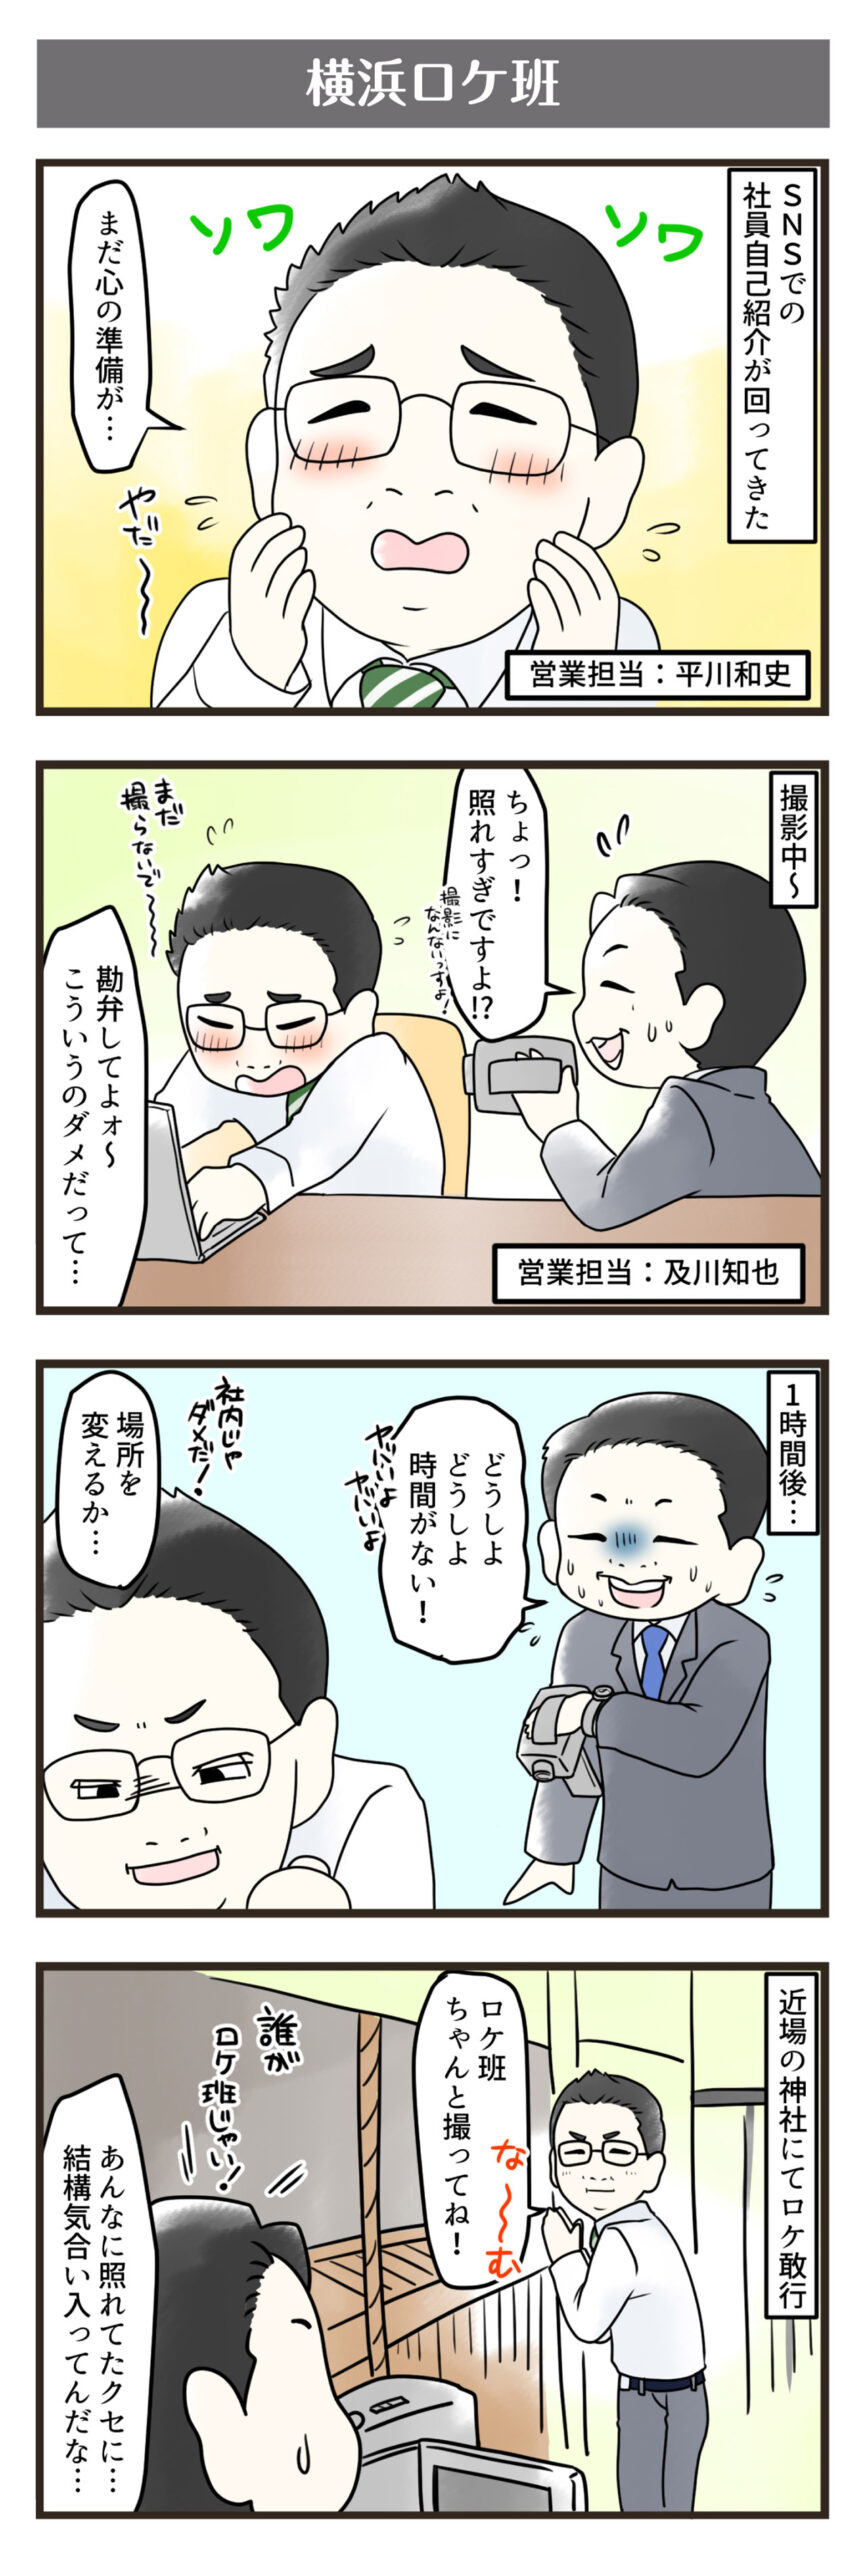 横浜スタイル4コマ漫画11月分